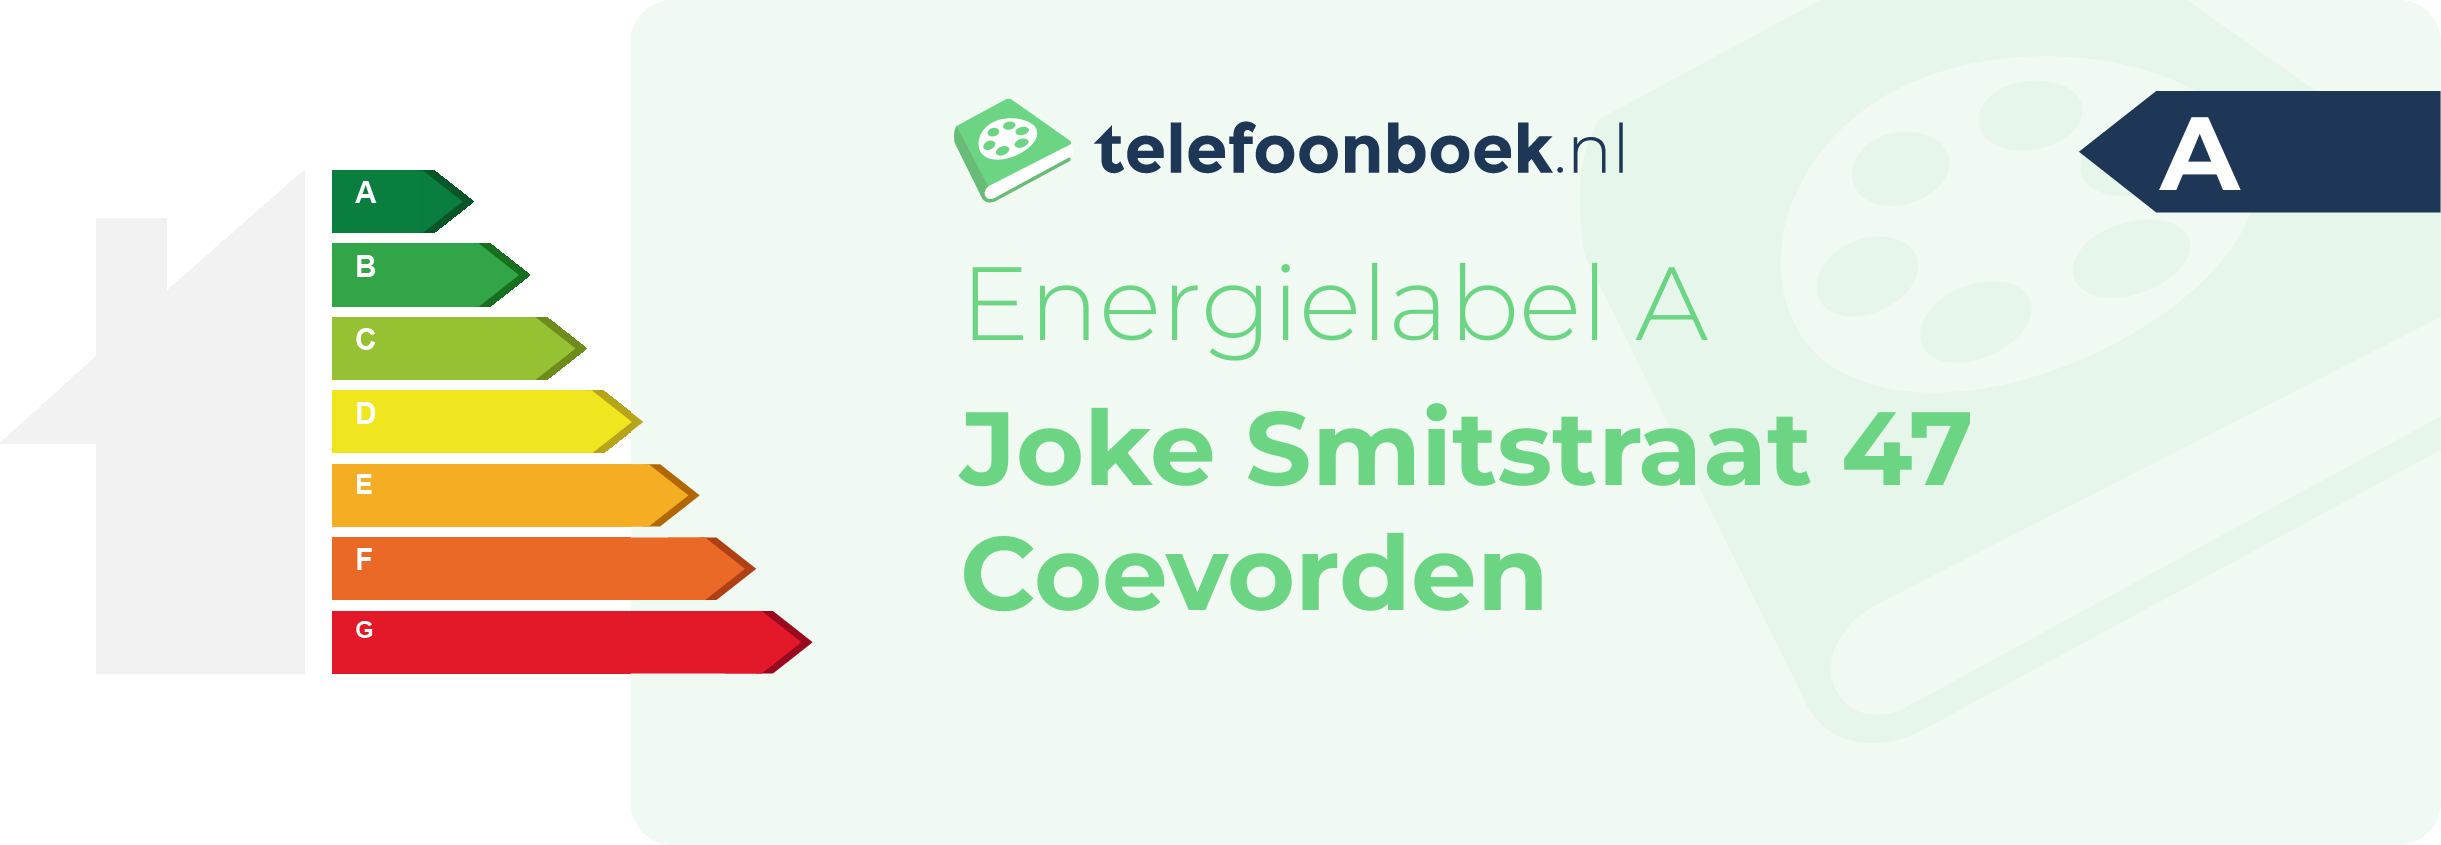 Energielabel Joke Smitstraat 47 Coevorden